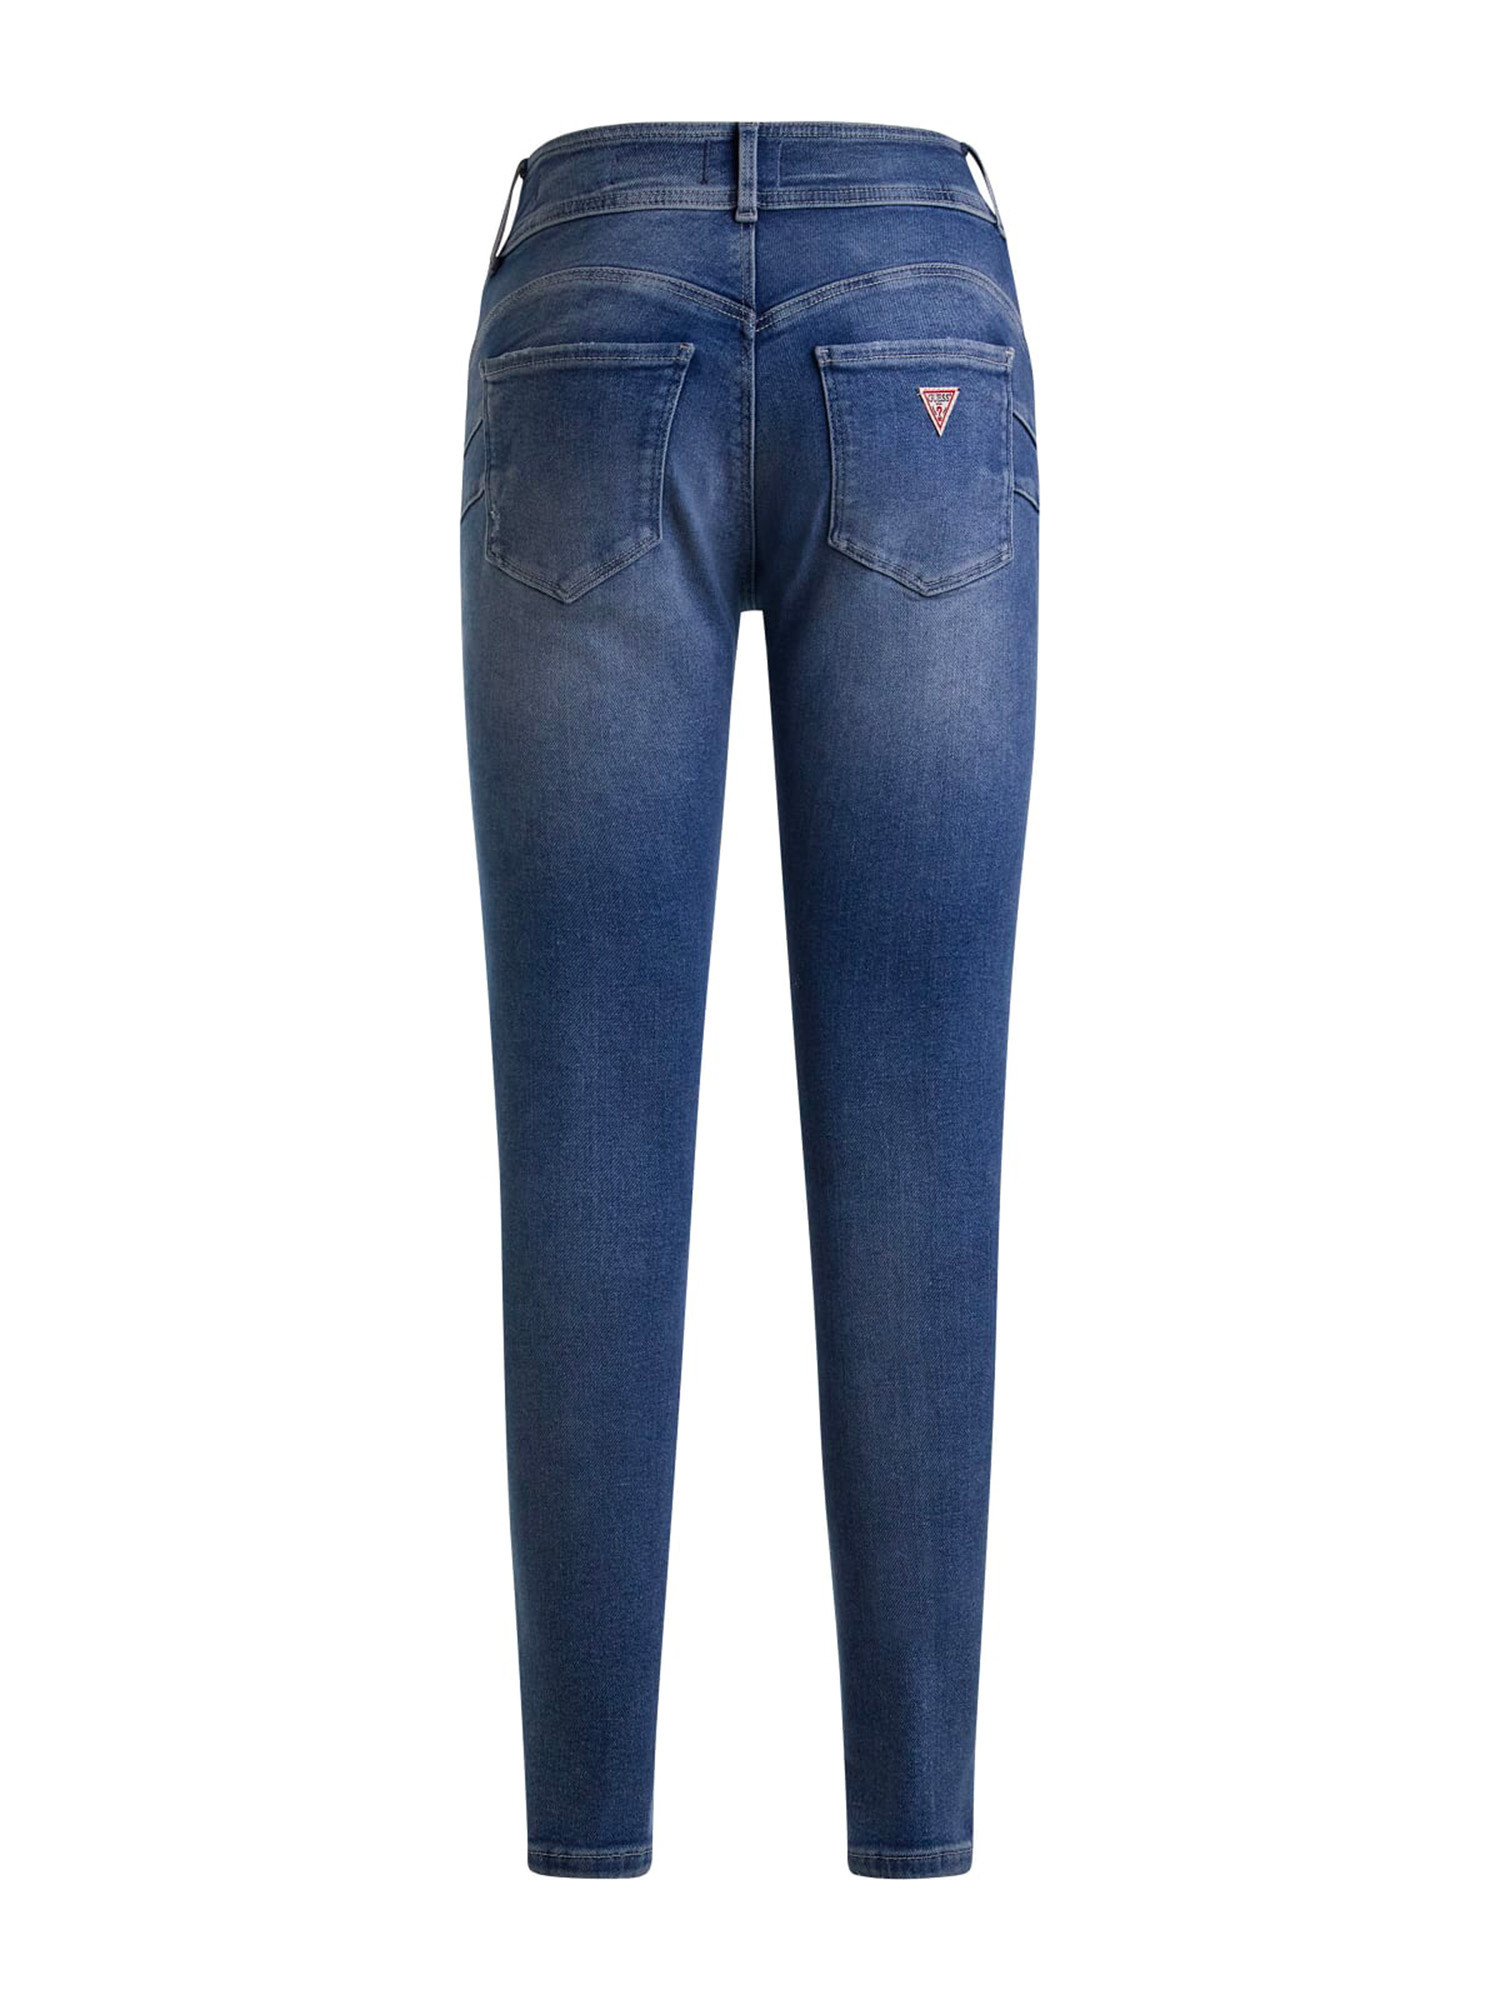 Guess - 5-pocket bootcut jeans, Denim, large image number 1